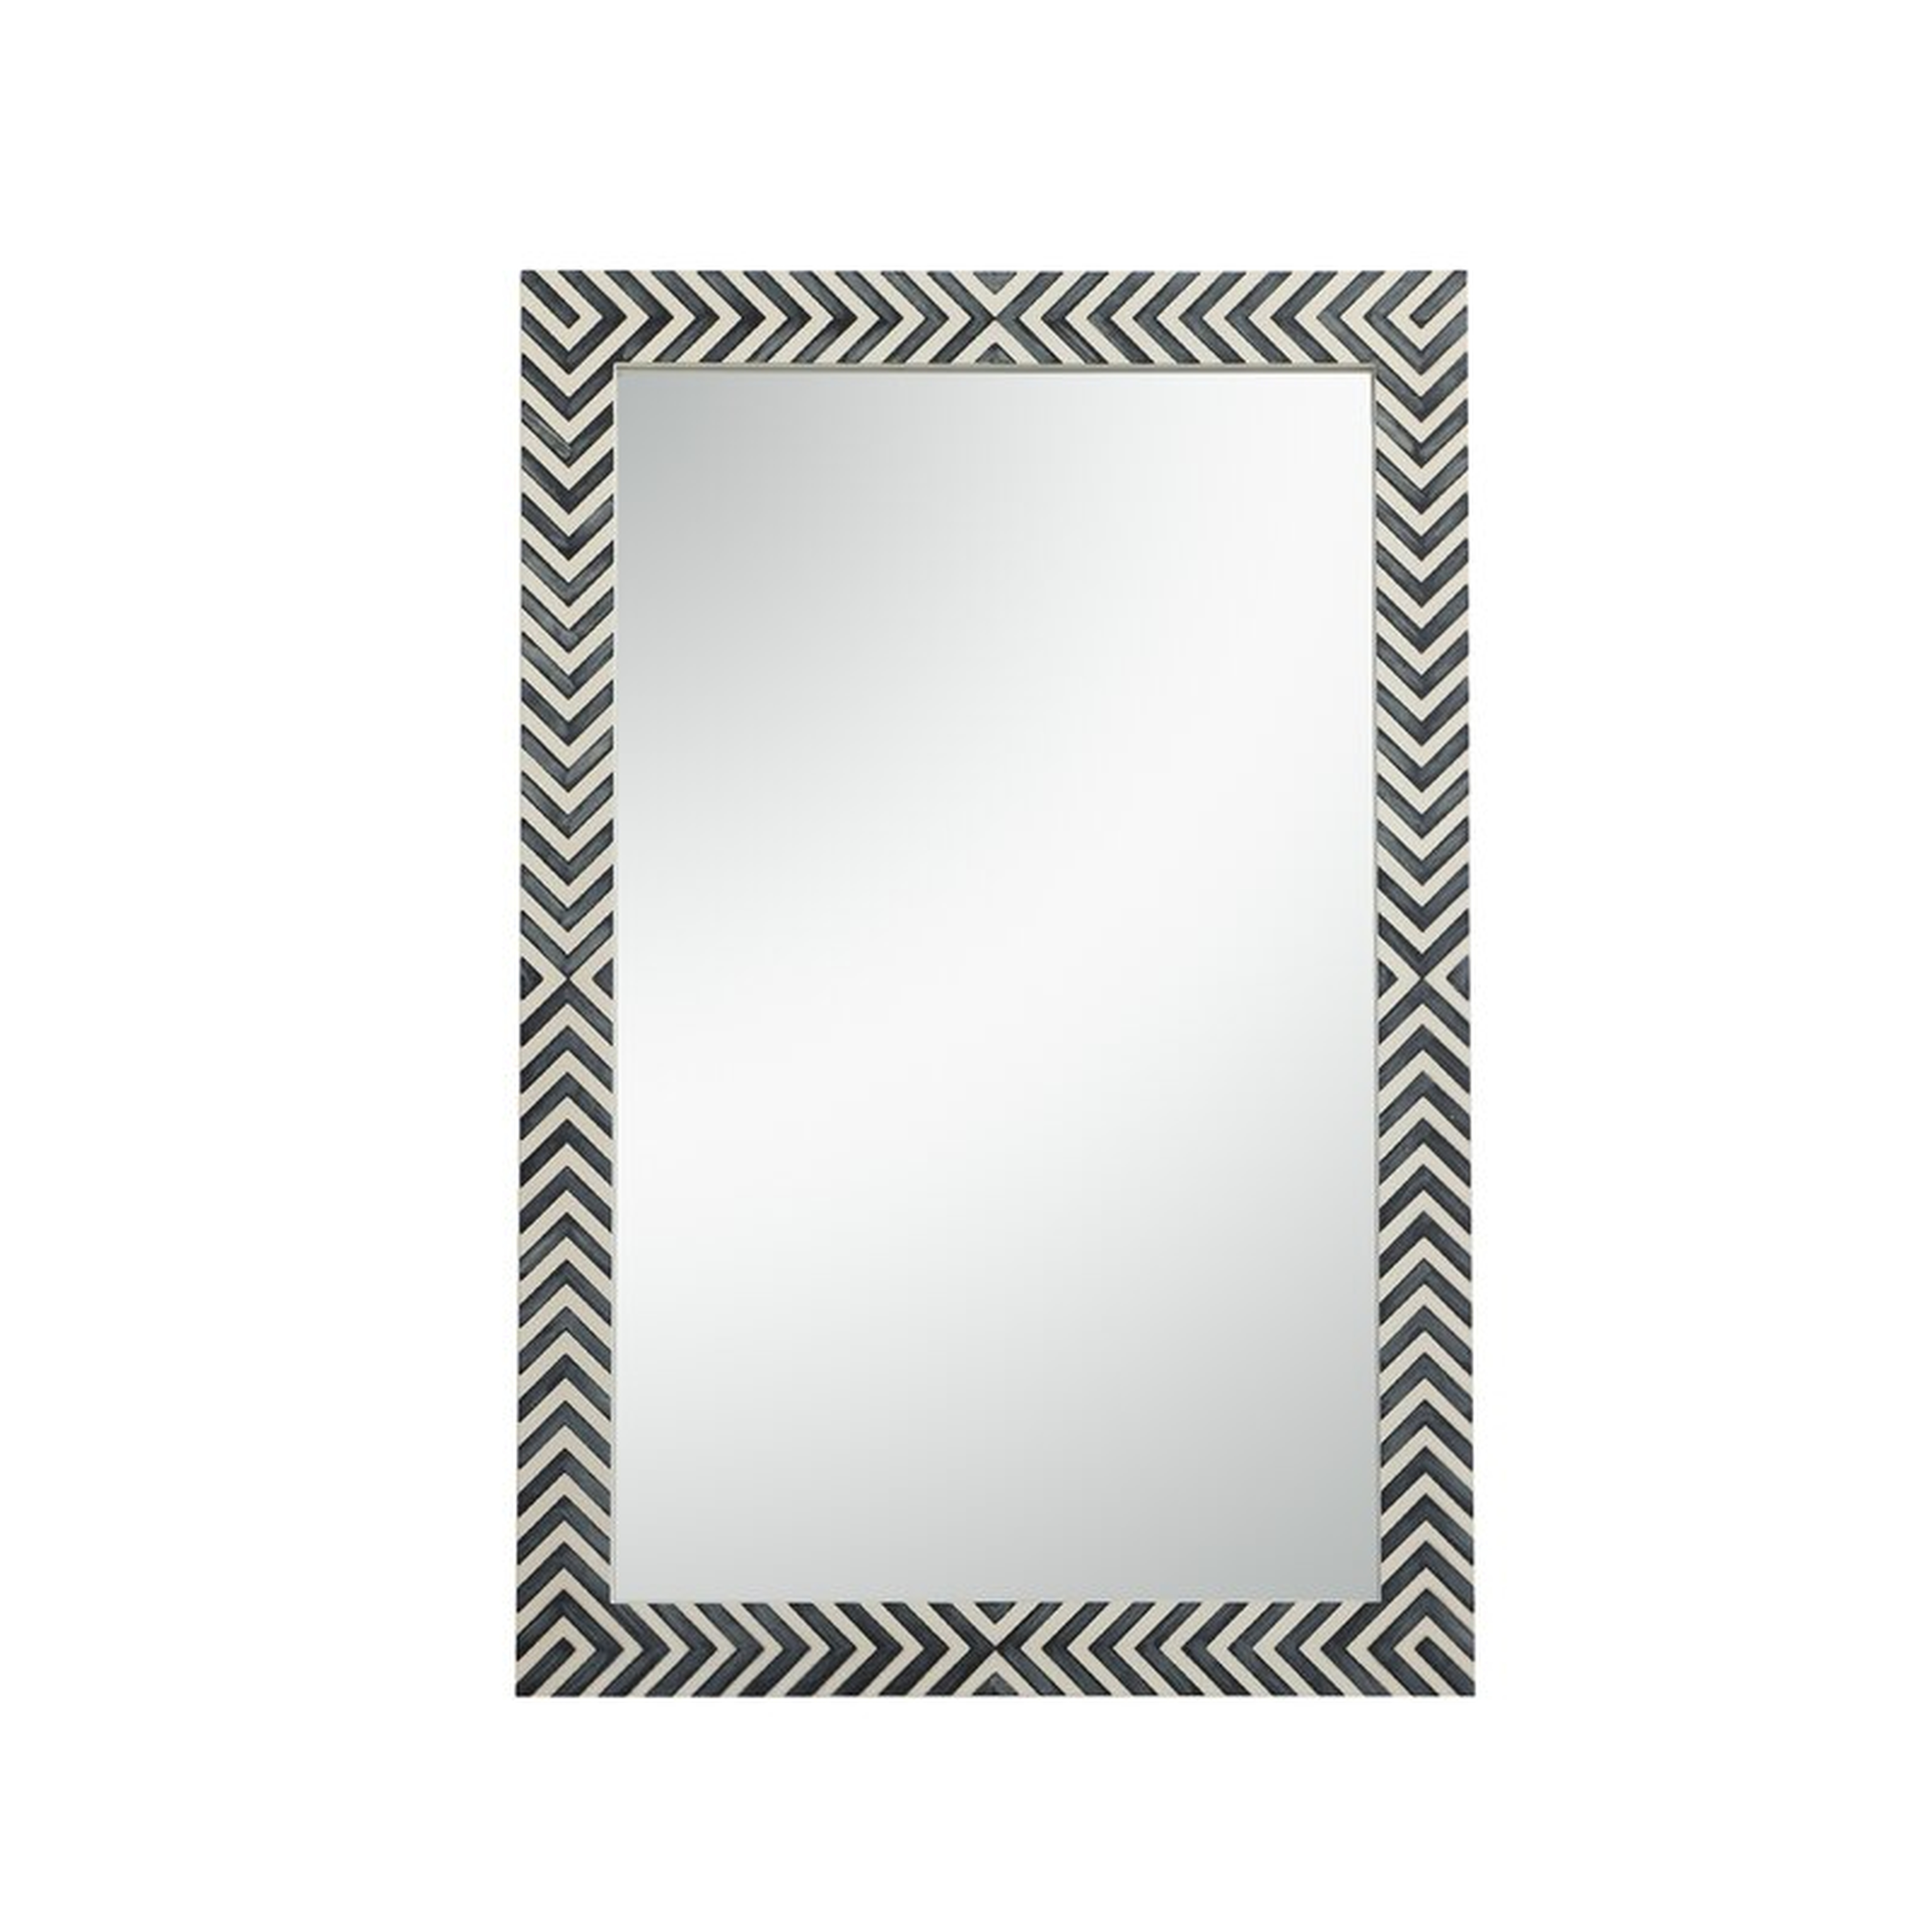 Obregon Contemporary Accent Mirror - Wayfair